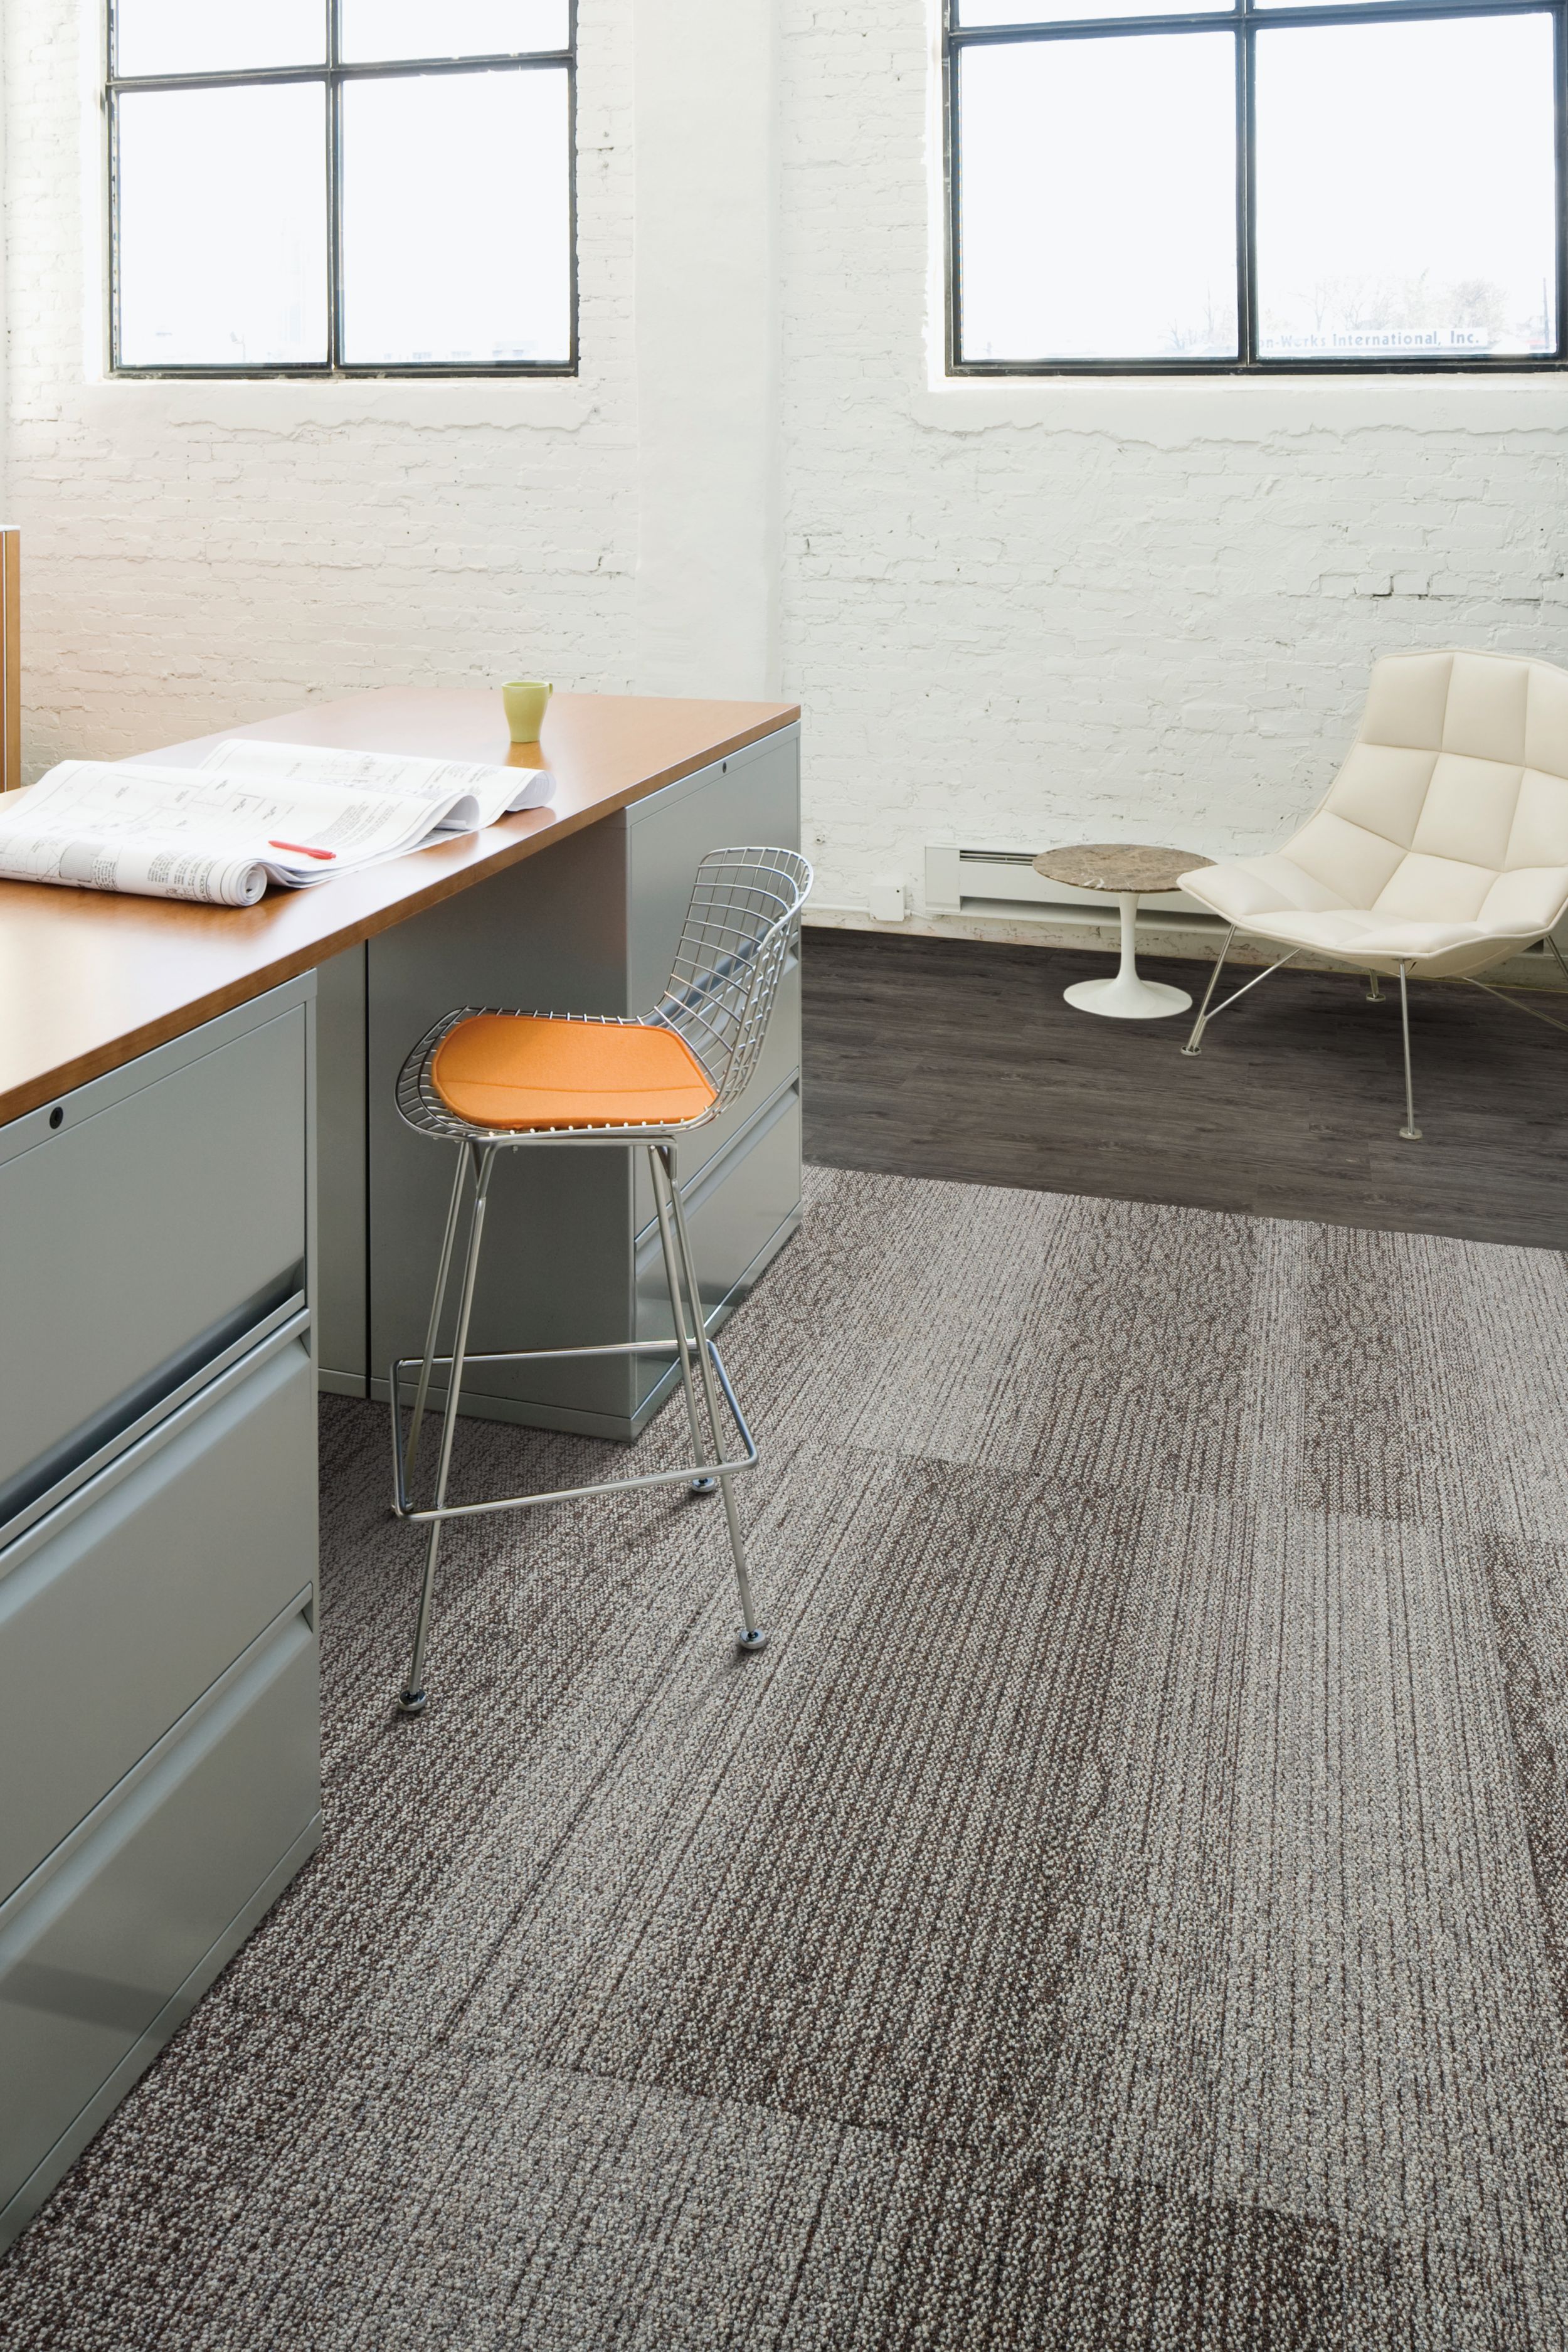 Interface Grasmere plank carpet tile and Natural Woodgrains LVT in desk area image number 8